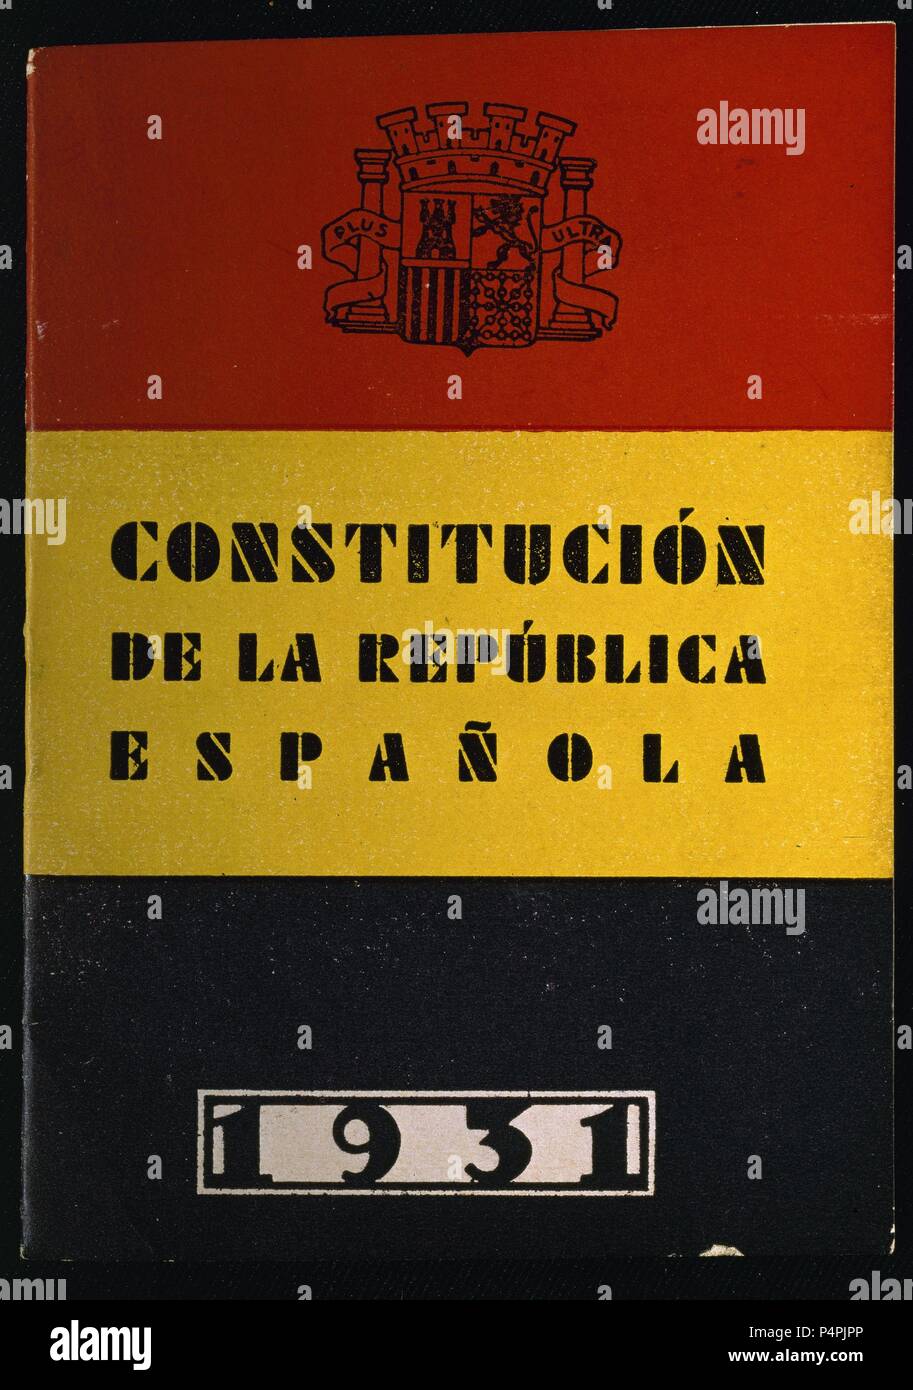 CONSTITUCION DE LA REPUBLICA ESPAÑOLA 1931-CUBIERTA. Location: CONGRESO DE LOS DIPUTADOS-BIBLIOTECA, MADRID, SPAIN. Stock Photo